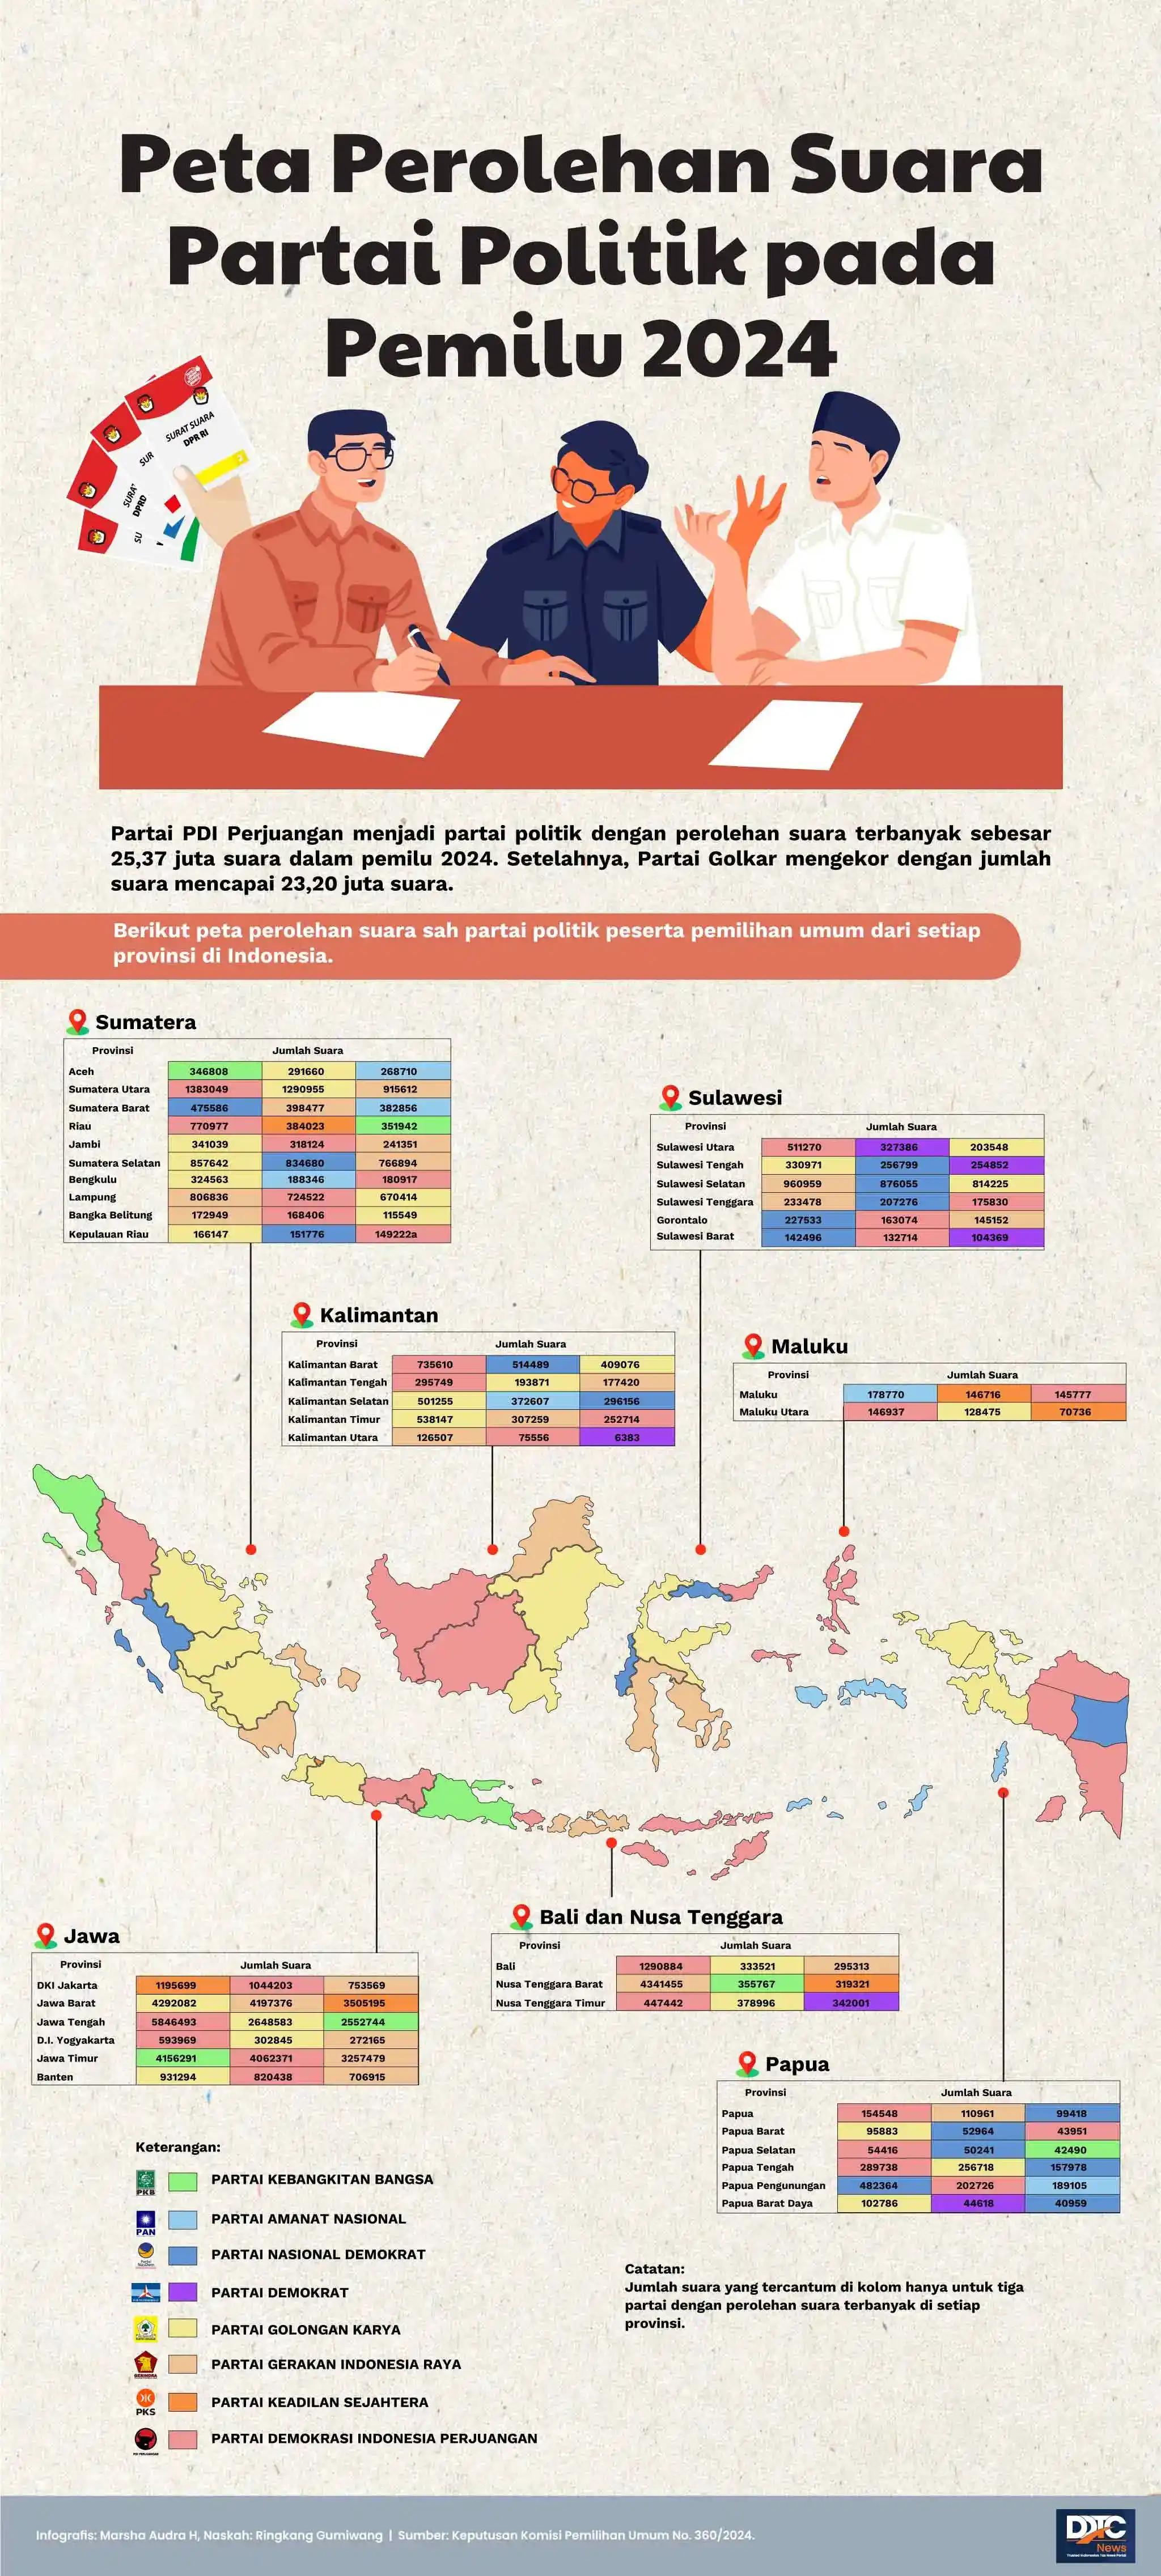 Peta Partai Politik dengan Perolehan Suara Terbanyak di Tiap Provinsi